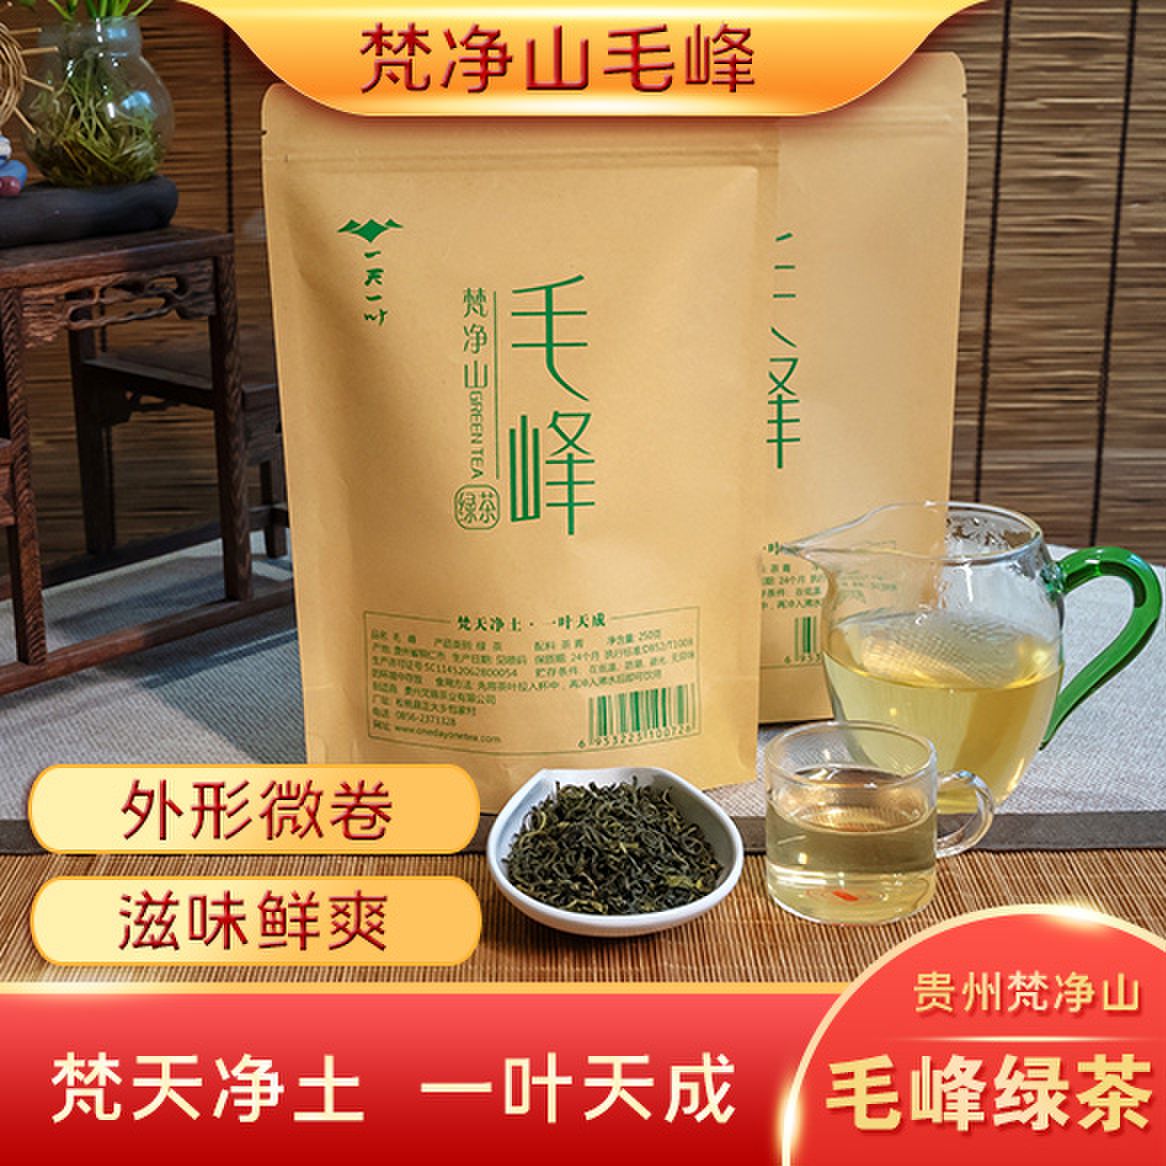 贵州梵青茶叶 绿茶 传统手工制作 净含量250g